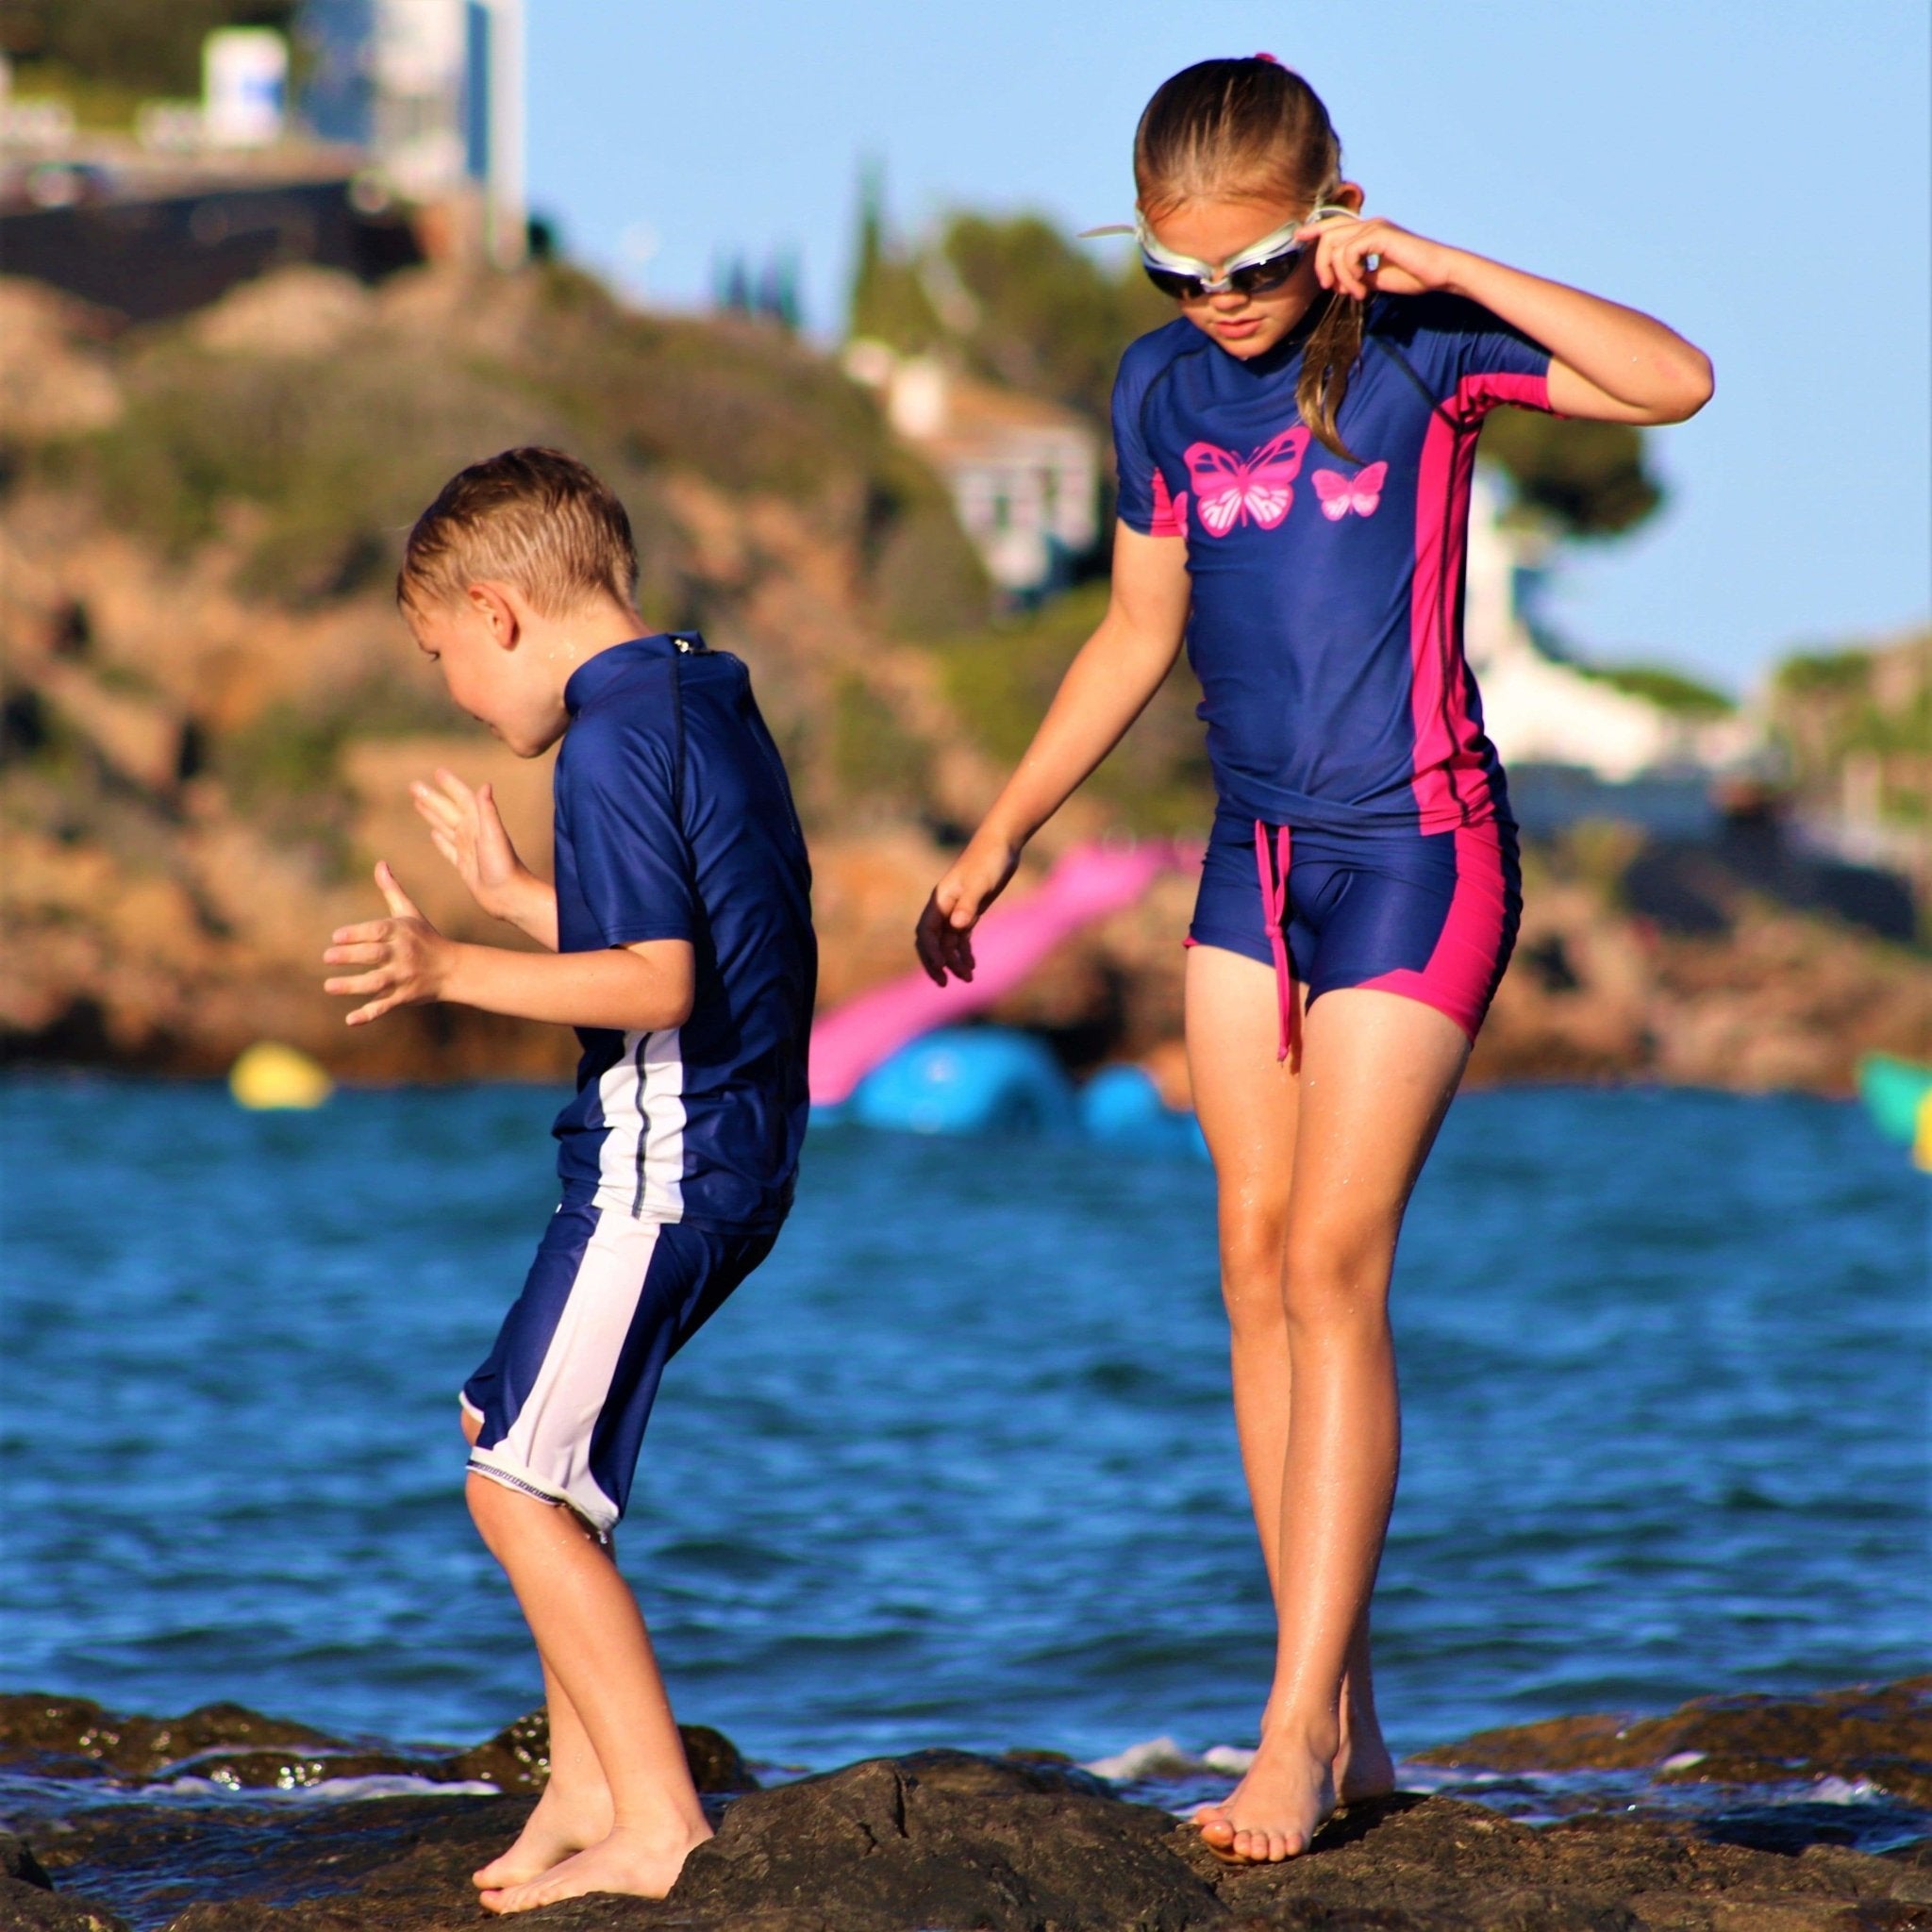 Sun protective UV bikini top for women and teenagers in indigo